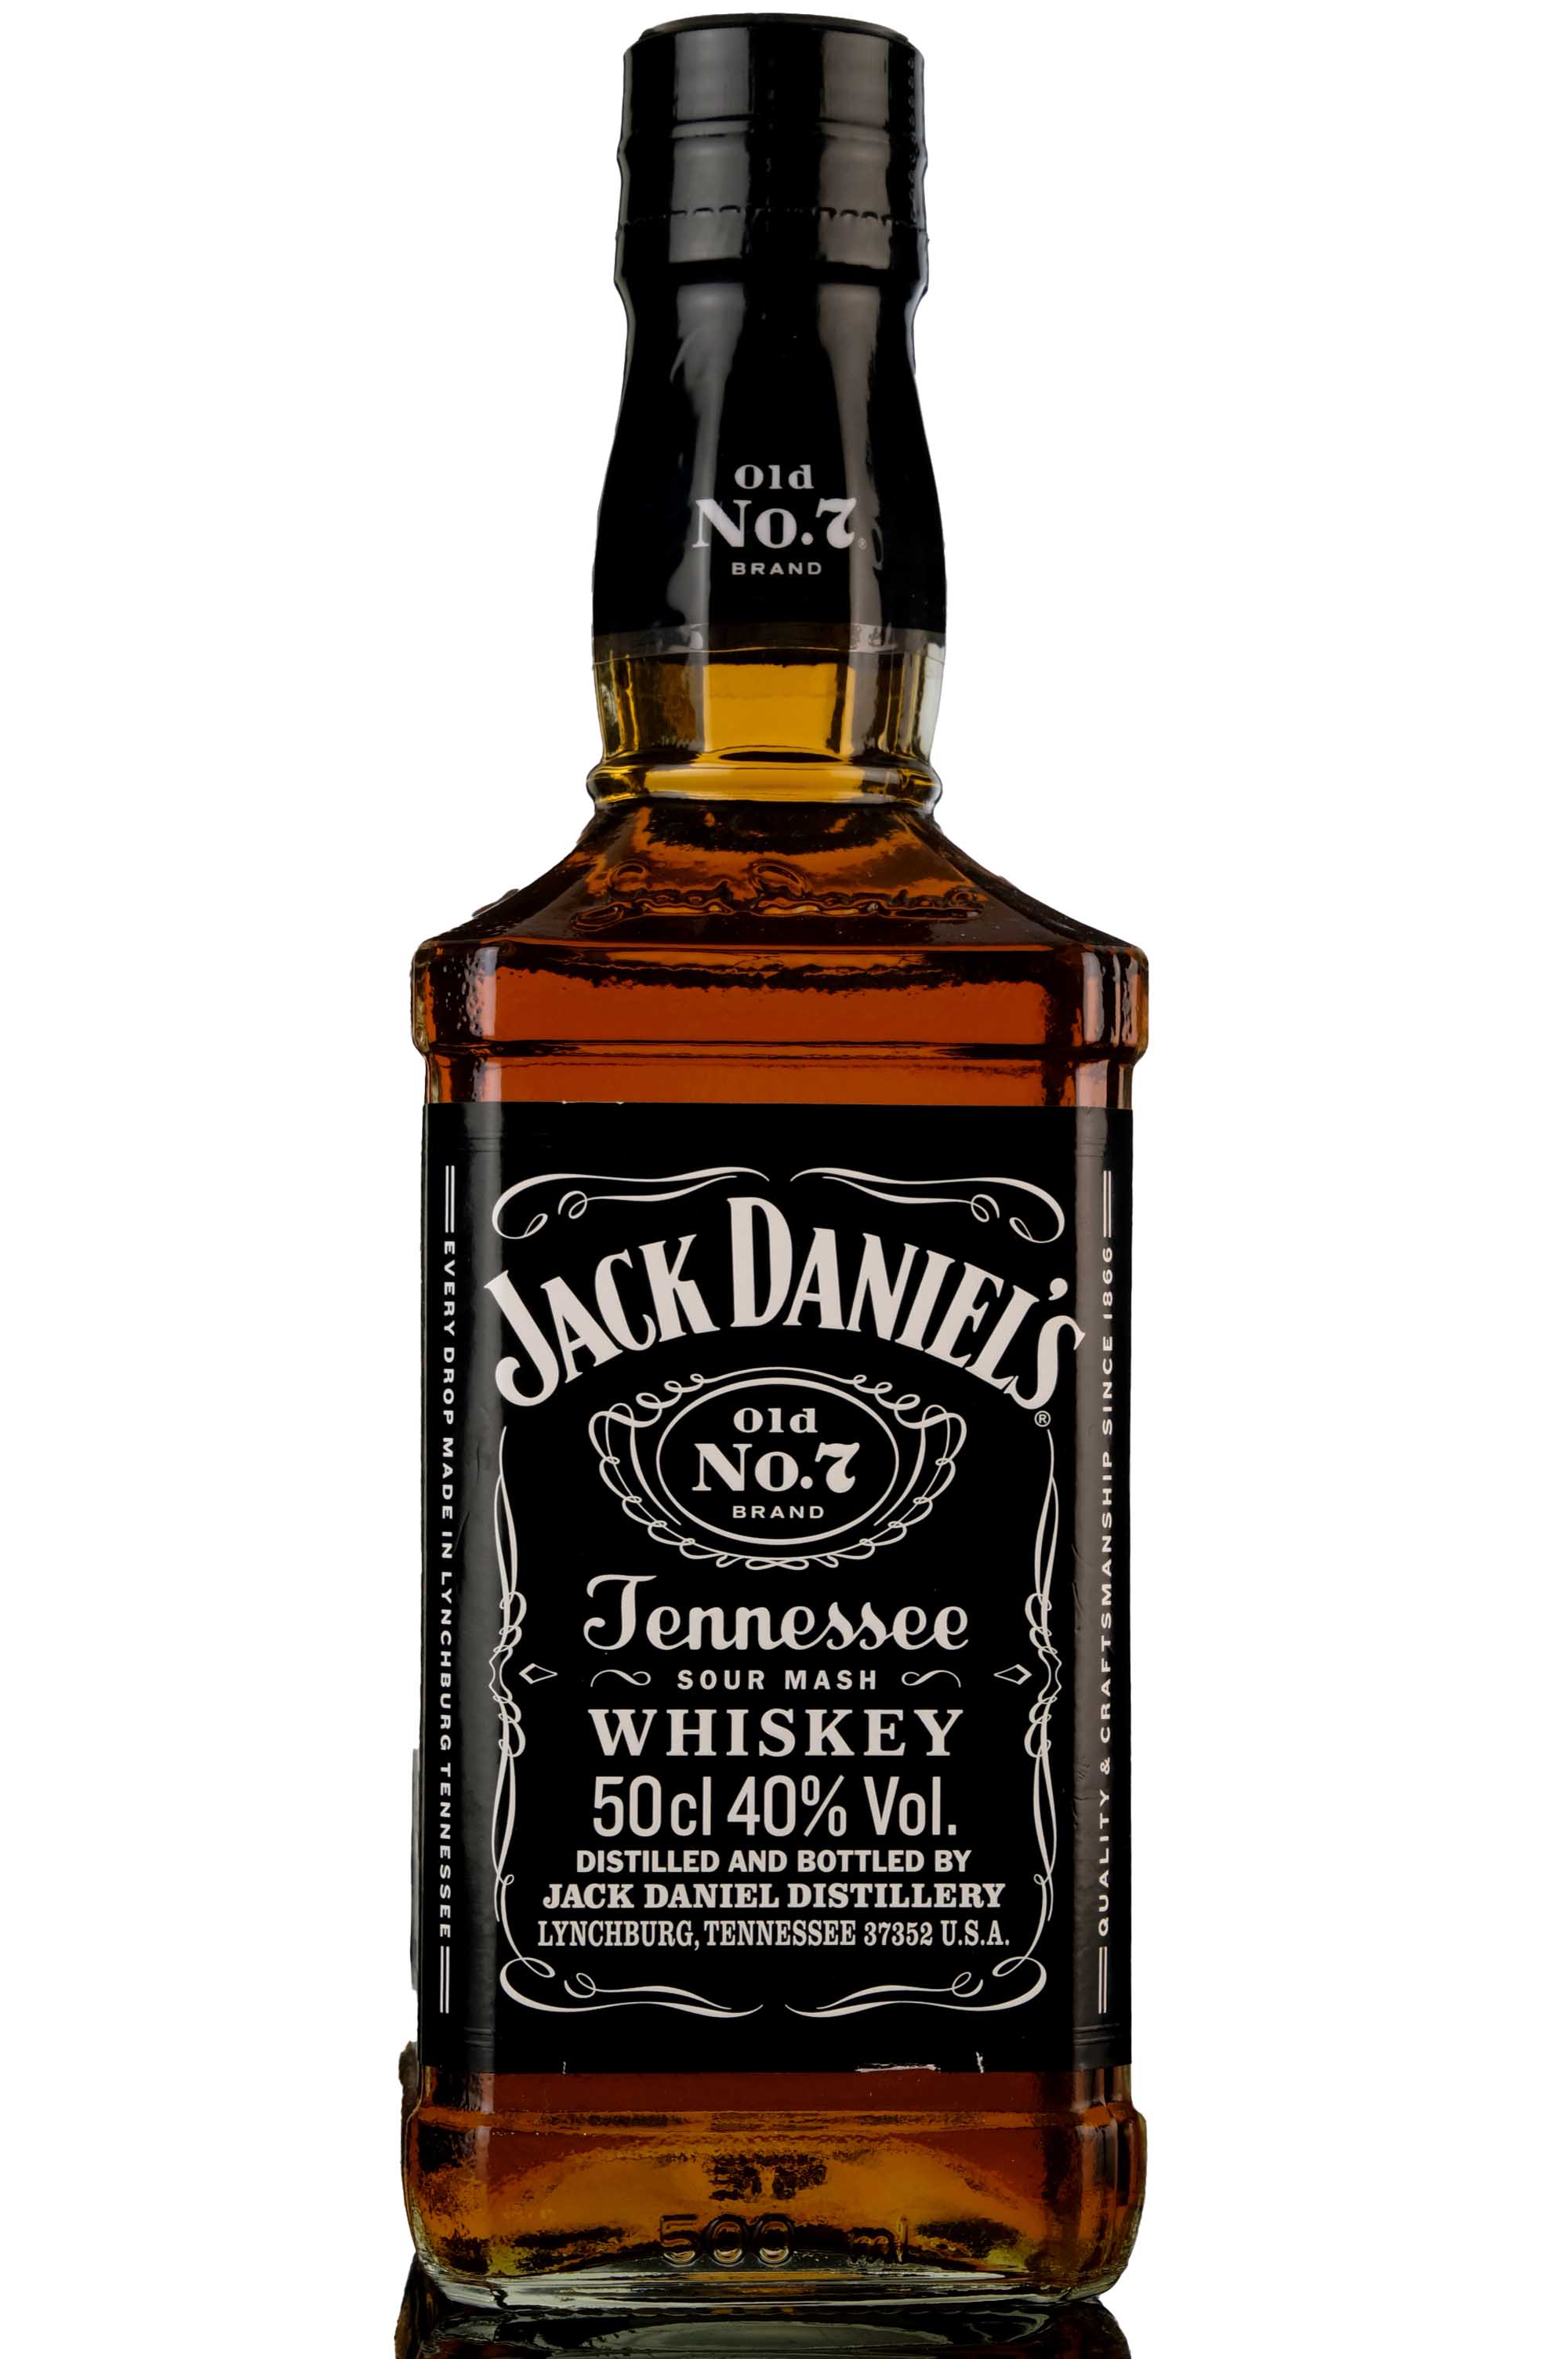 Jack Daniels Old No.7 Brand - Half Litre